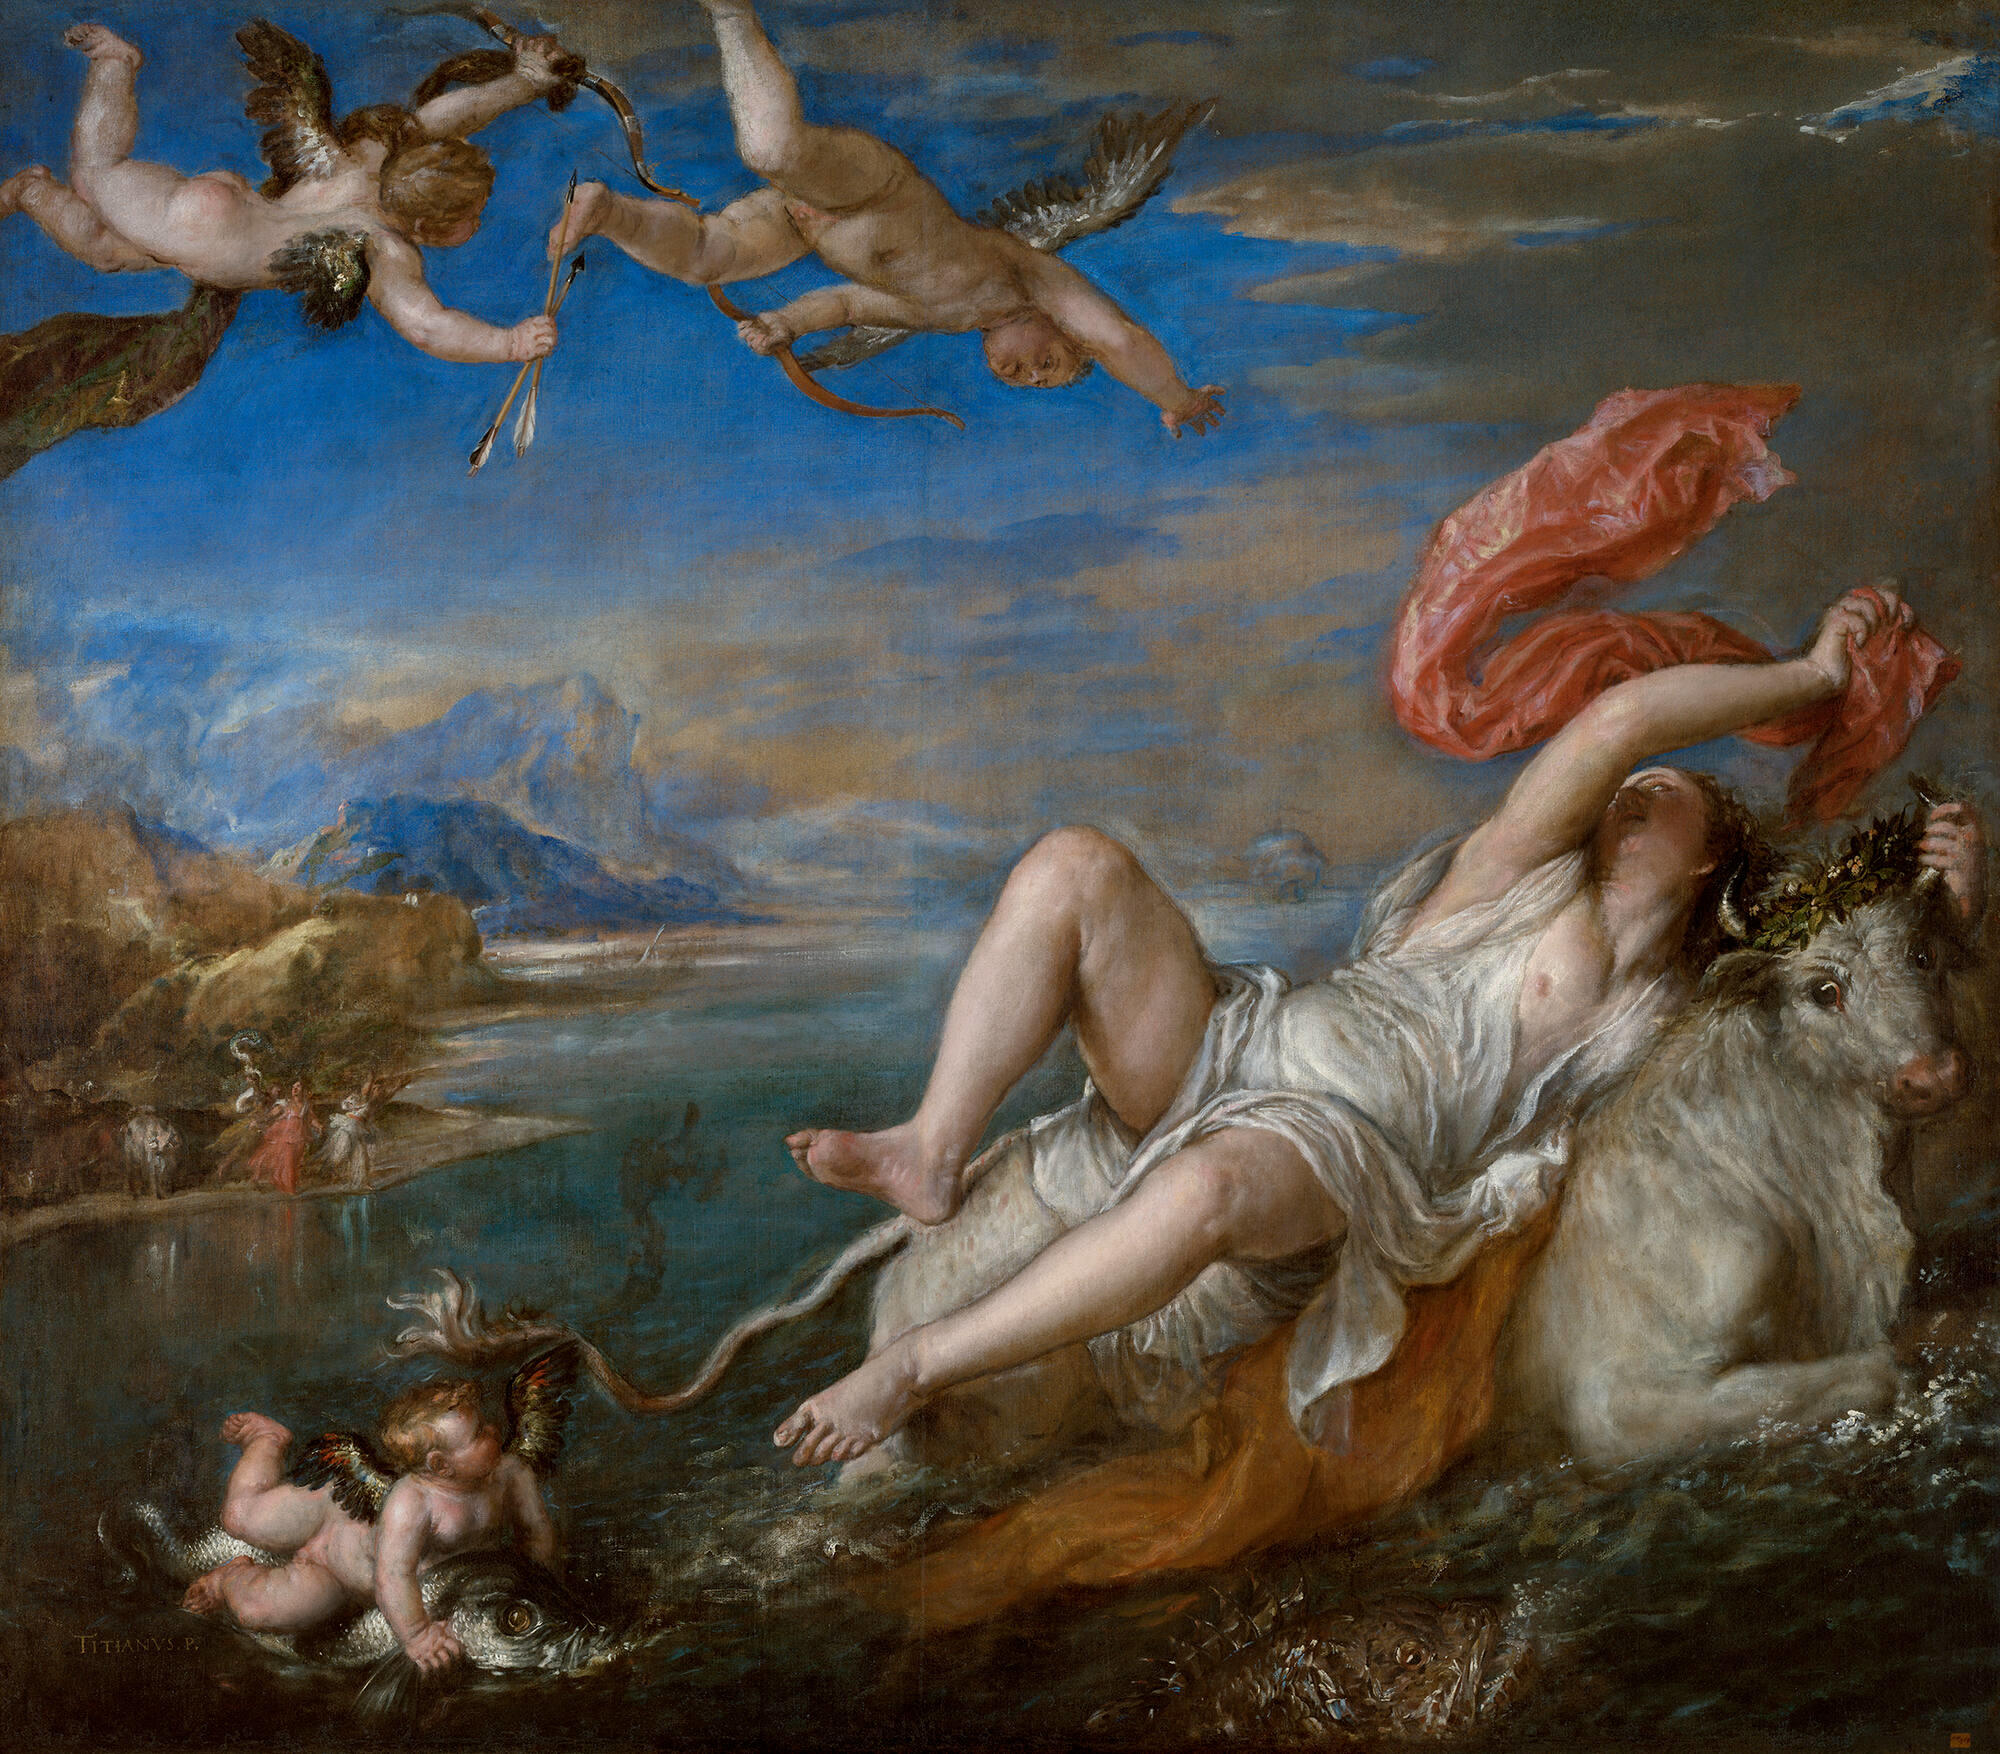 Rape of Europa by Titian.